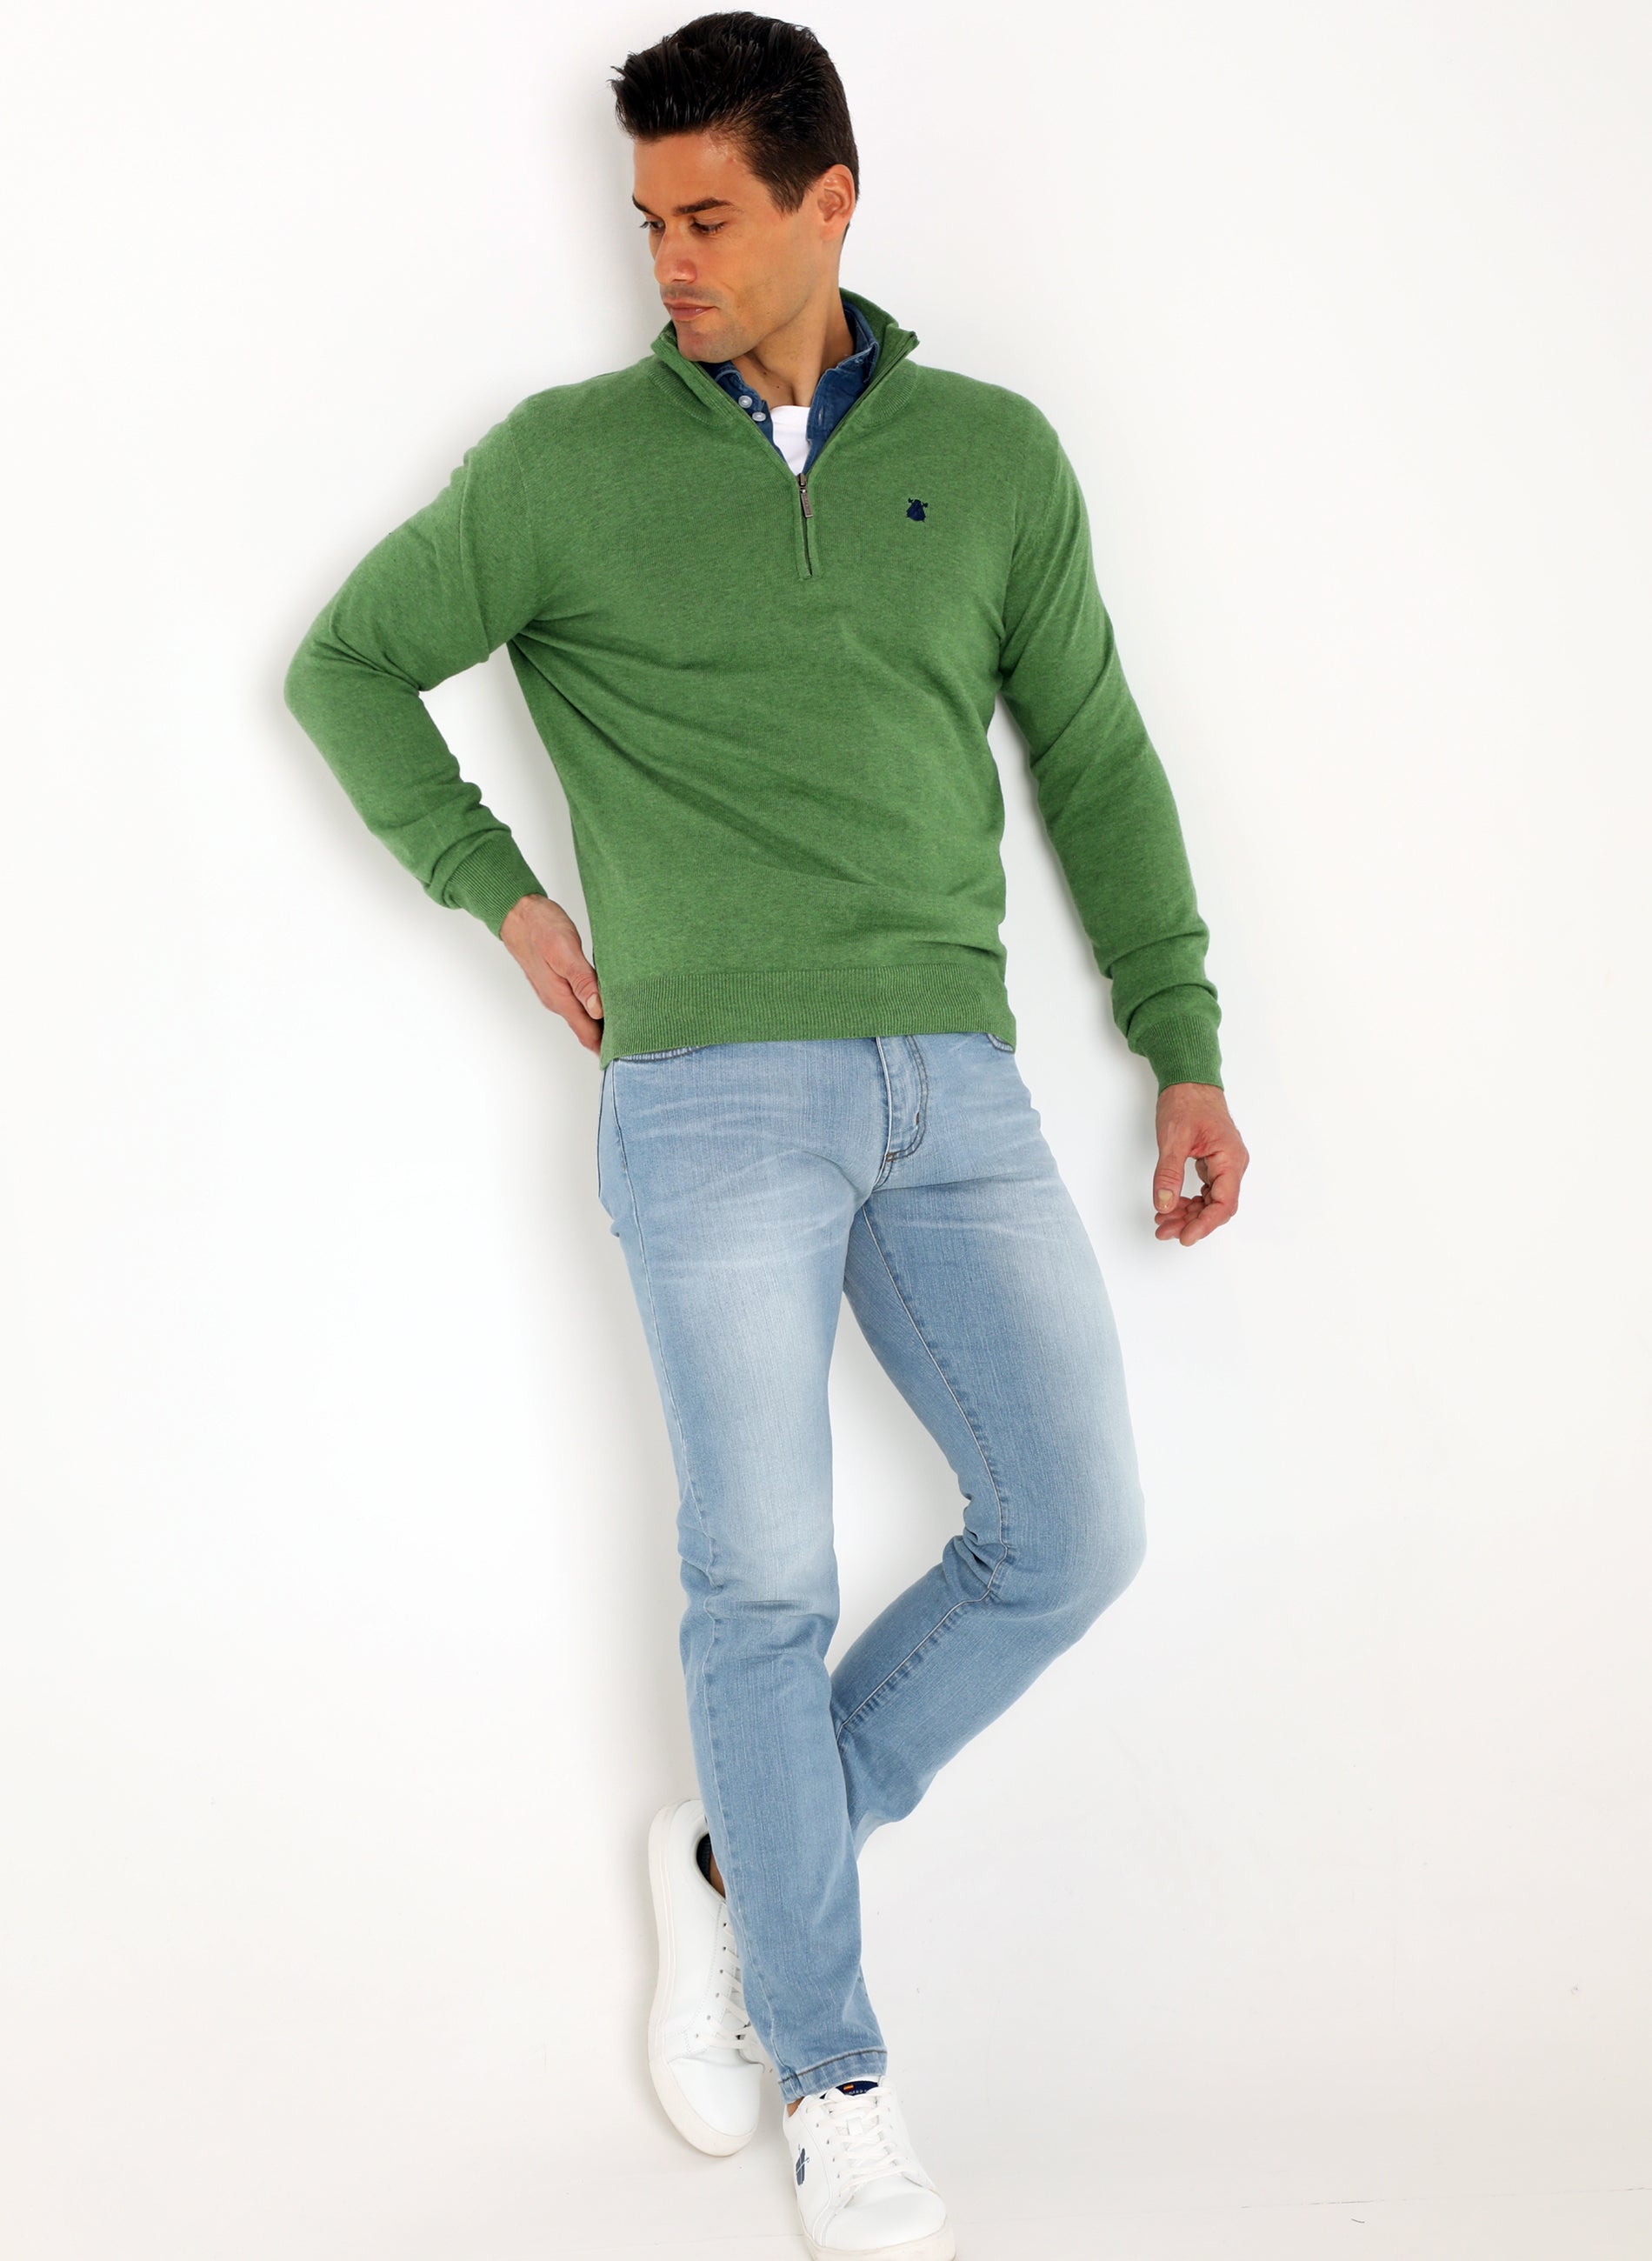 Men's Green Zipper Sweater